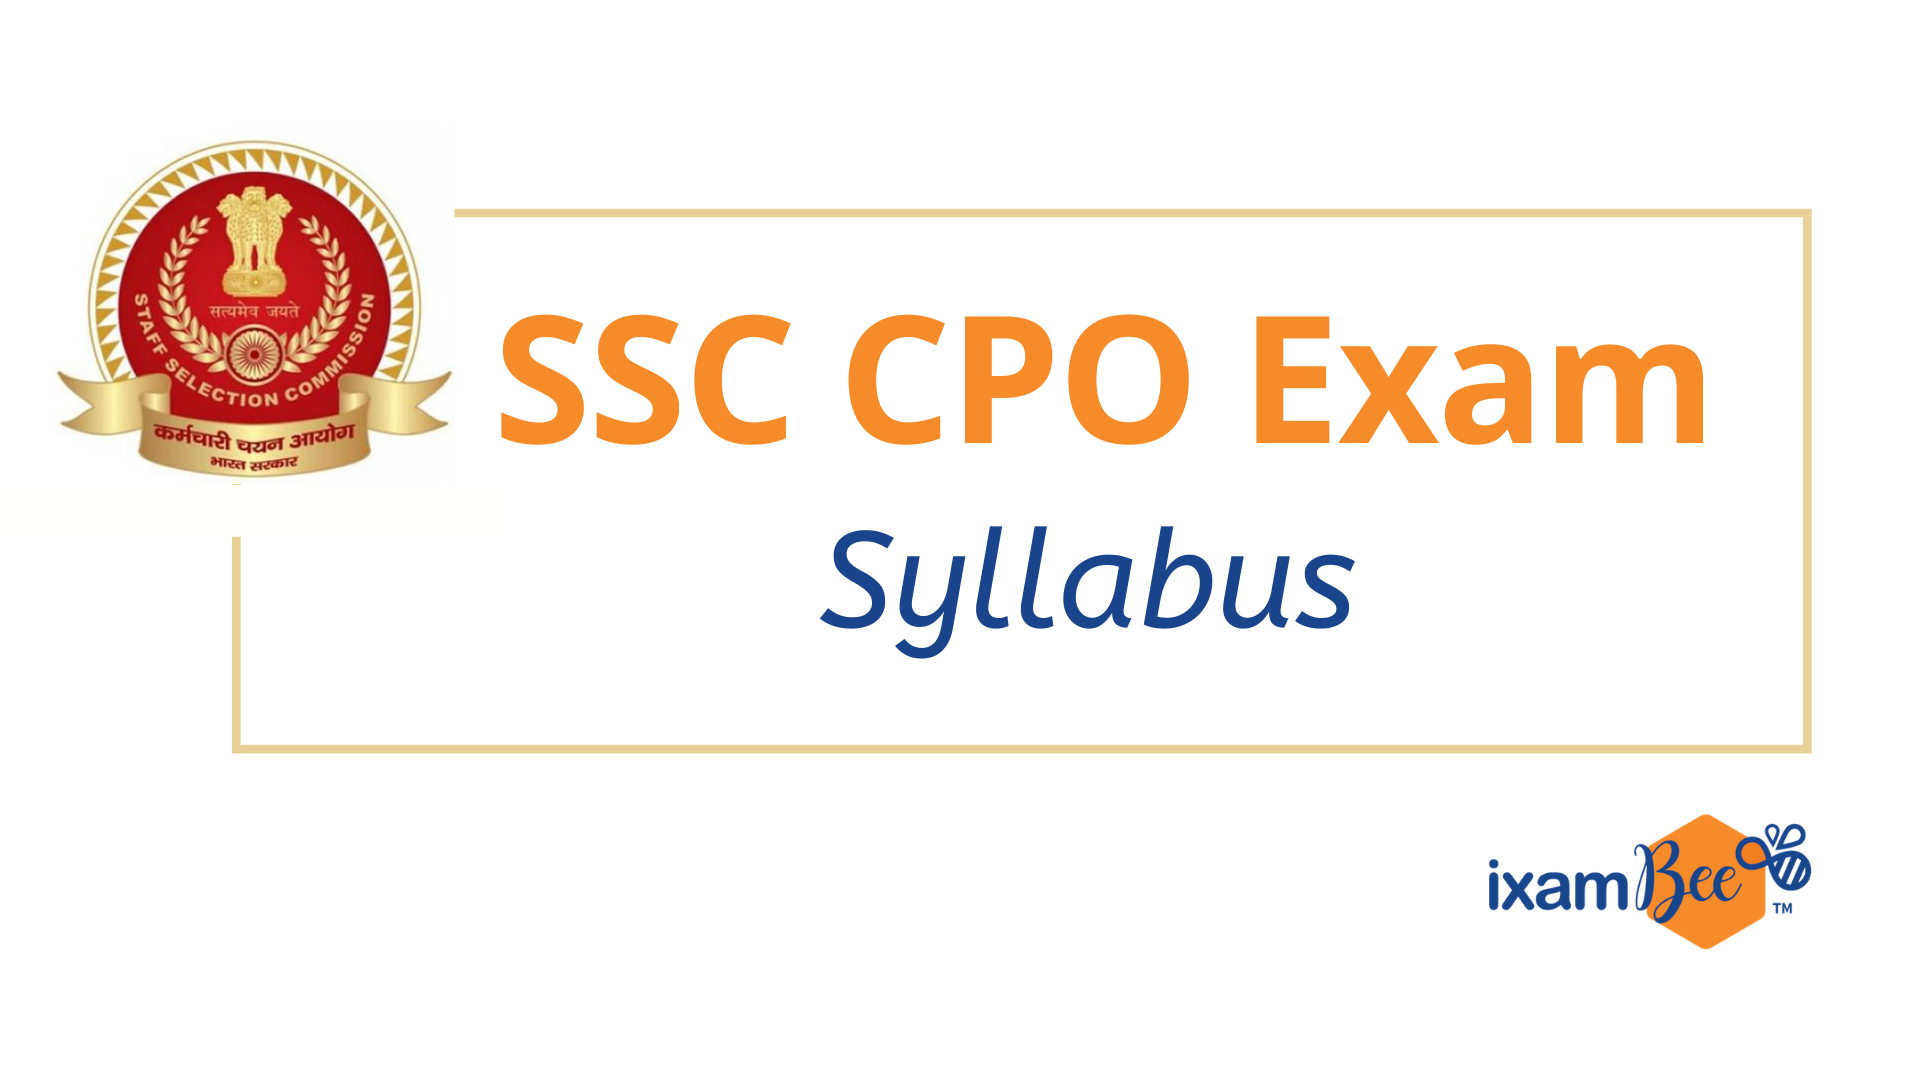 SSC CPO Exam Syllabus